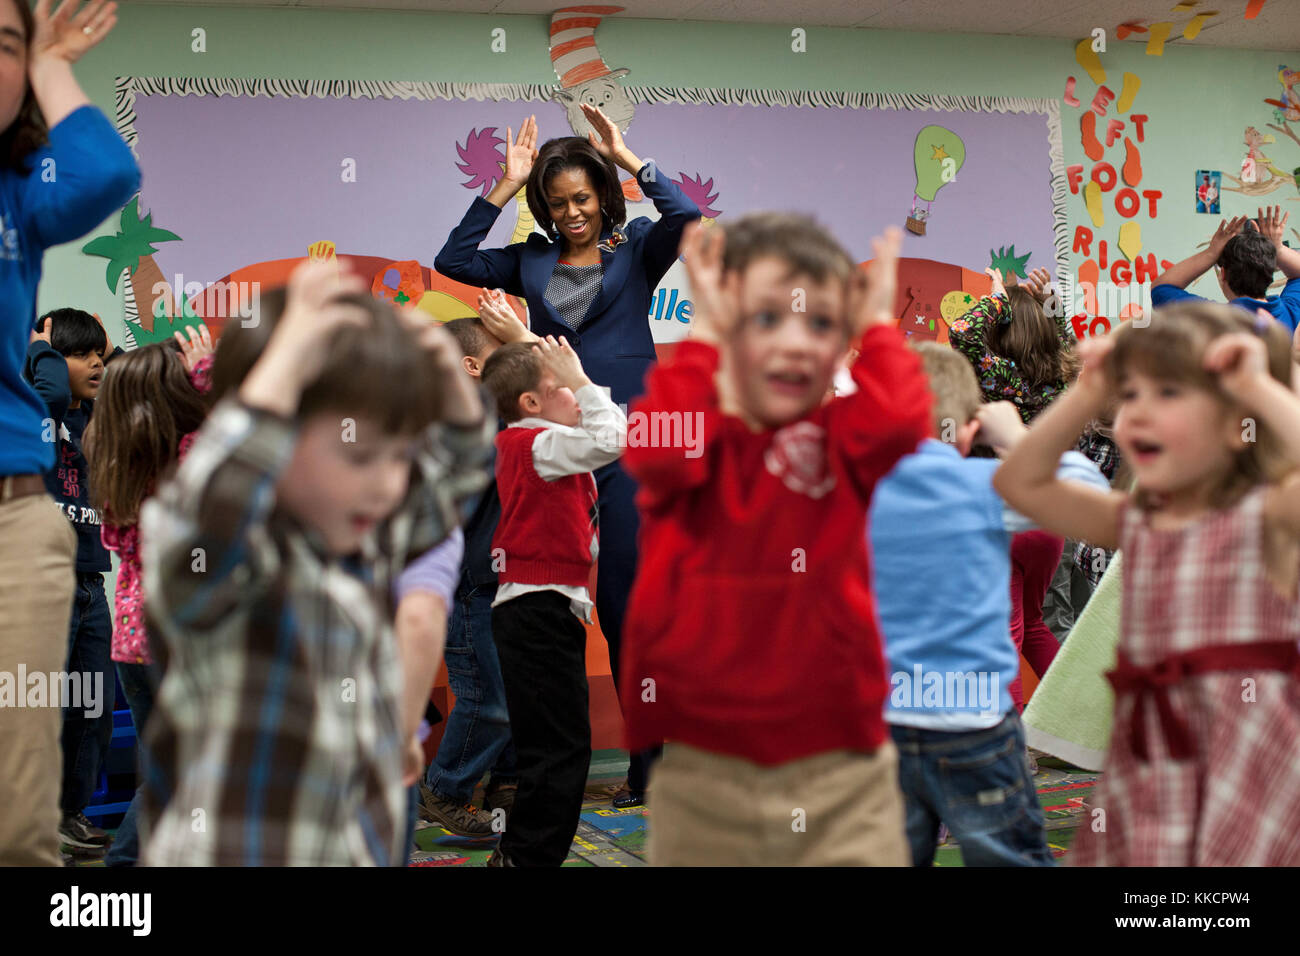 La Première Dame Michelle Obama participe à la 'bunny pokey' chants et danse avec les enfants dans le kinderbees activty prix à penacook centre communautaire à penacook, n.h., 9 mars 2012. Banque D'Images